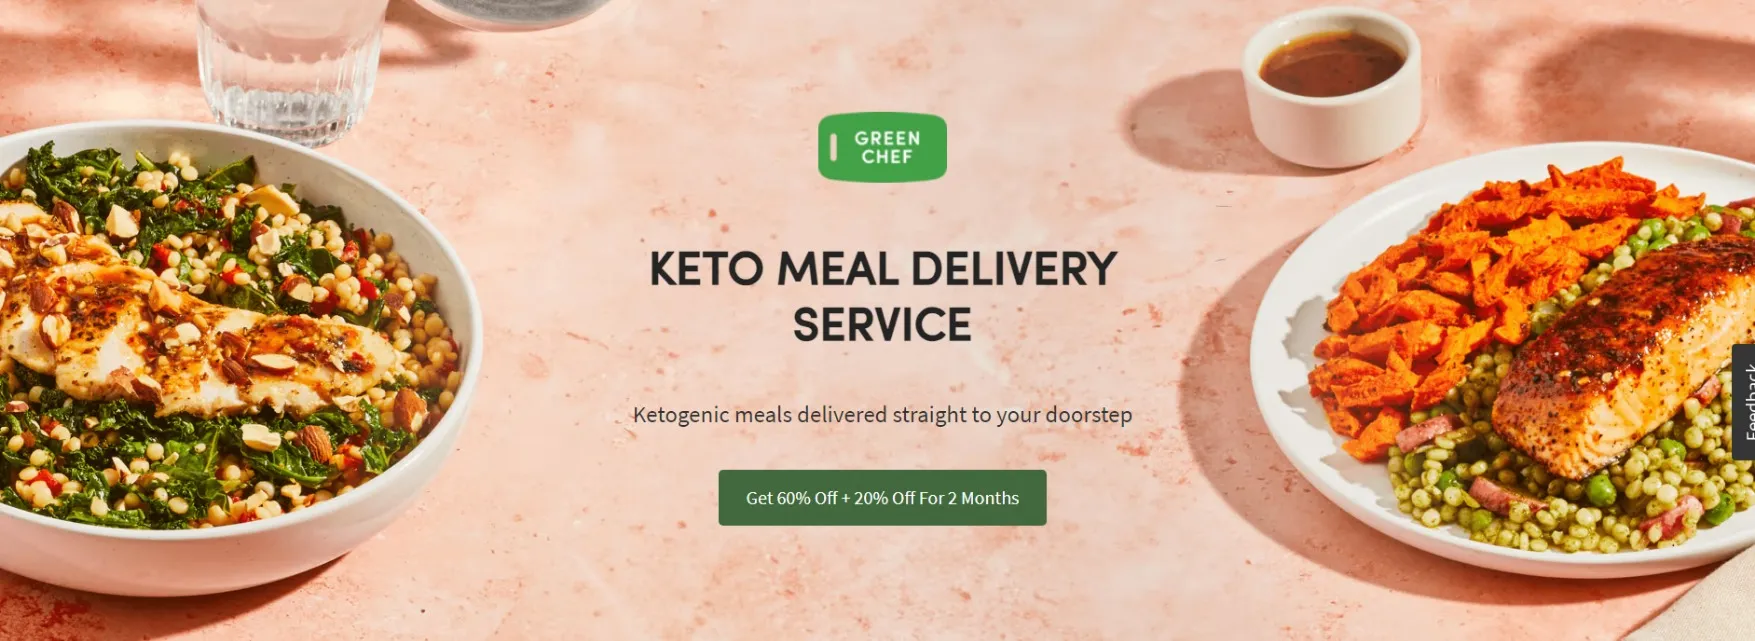 Green Chef Keto